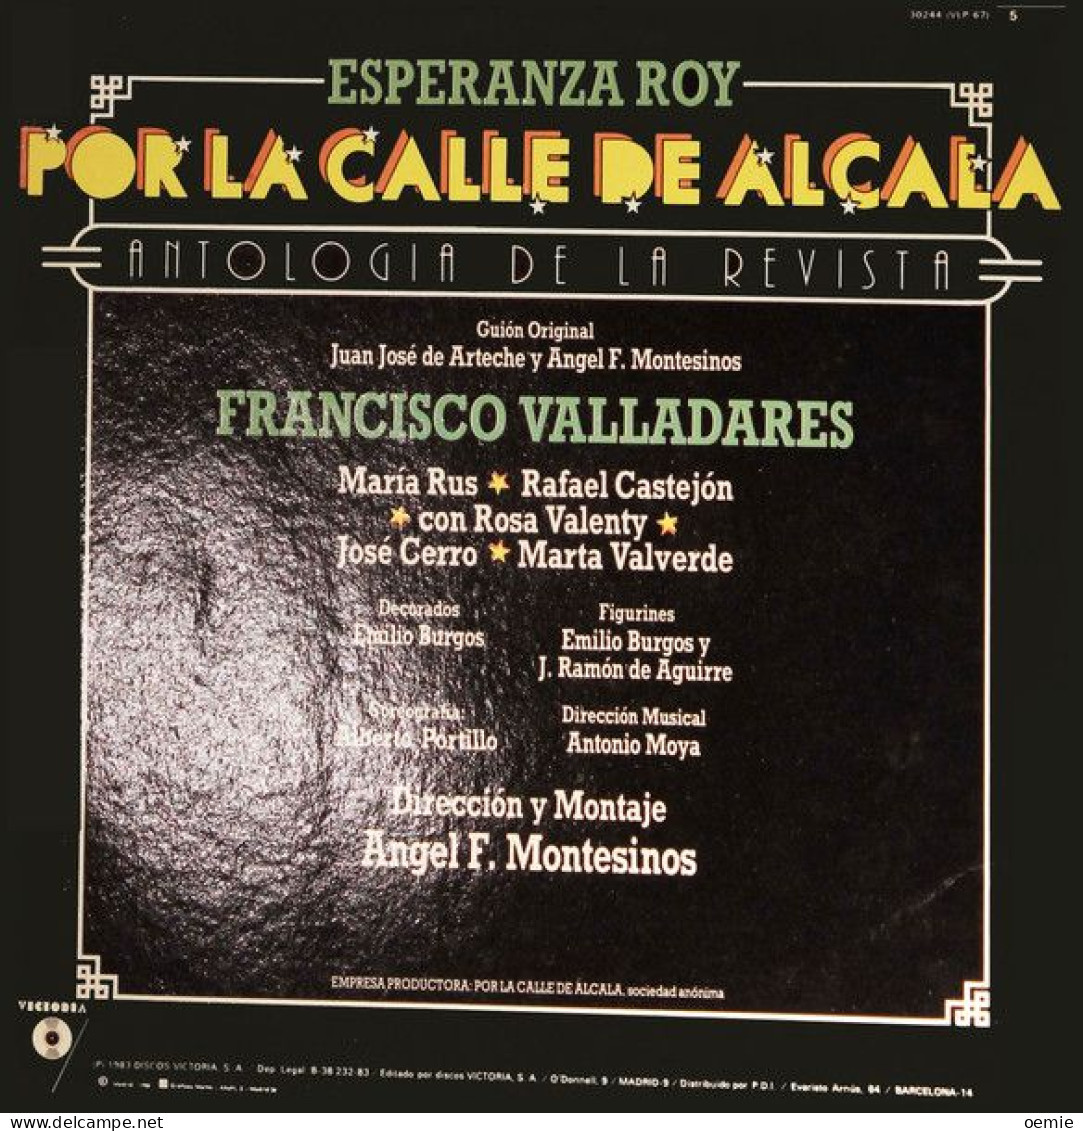 ANTOLOGIA DE LA REVISTA  ESPERANZA ROY  POR LA CALLE DE ALCALA  FRANCISCO VALLADARES - Sonstige - Spanische Musik